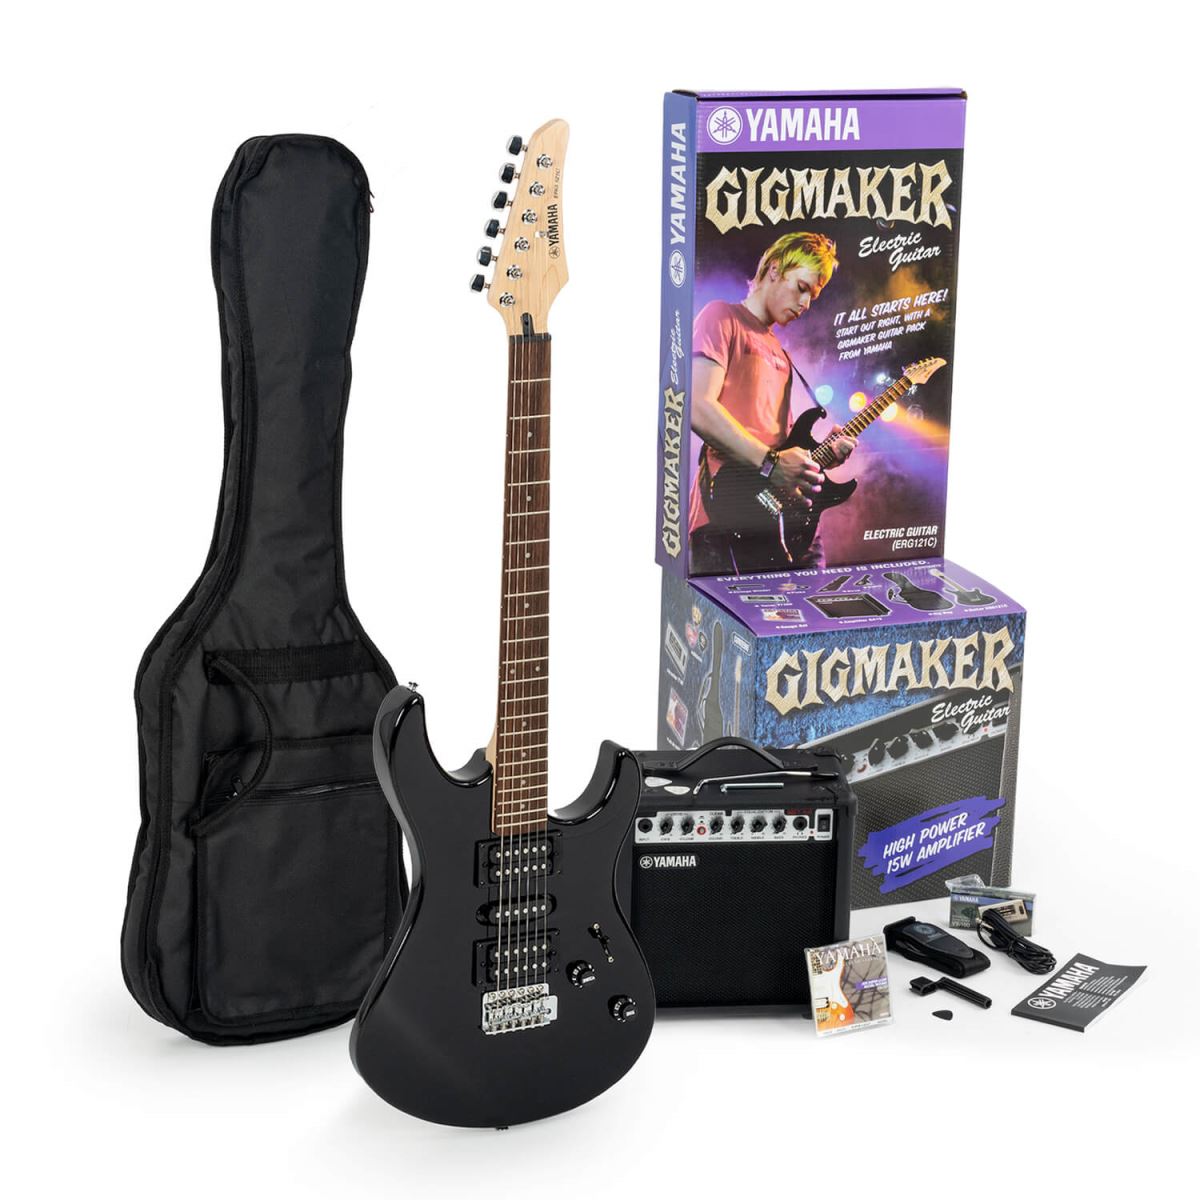 giới thiệu bộ đàn guitar điện yamaha gigmaker